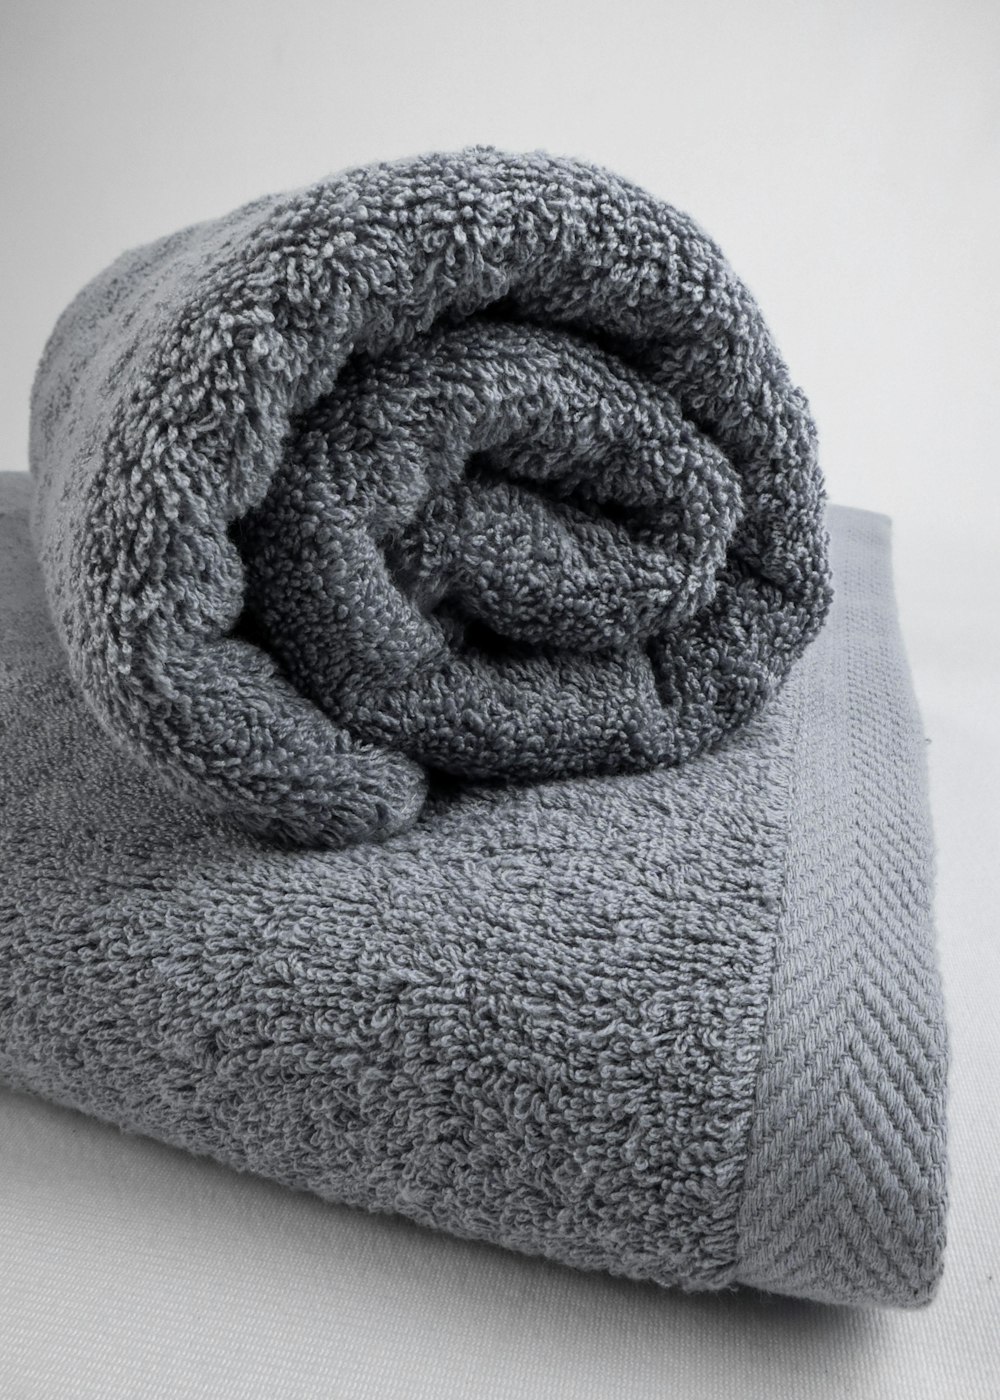 une serviette grise repliée sur un lit